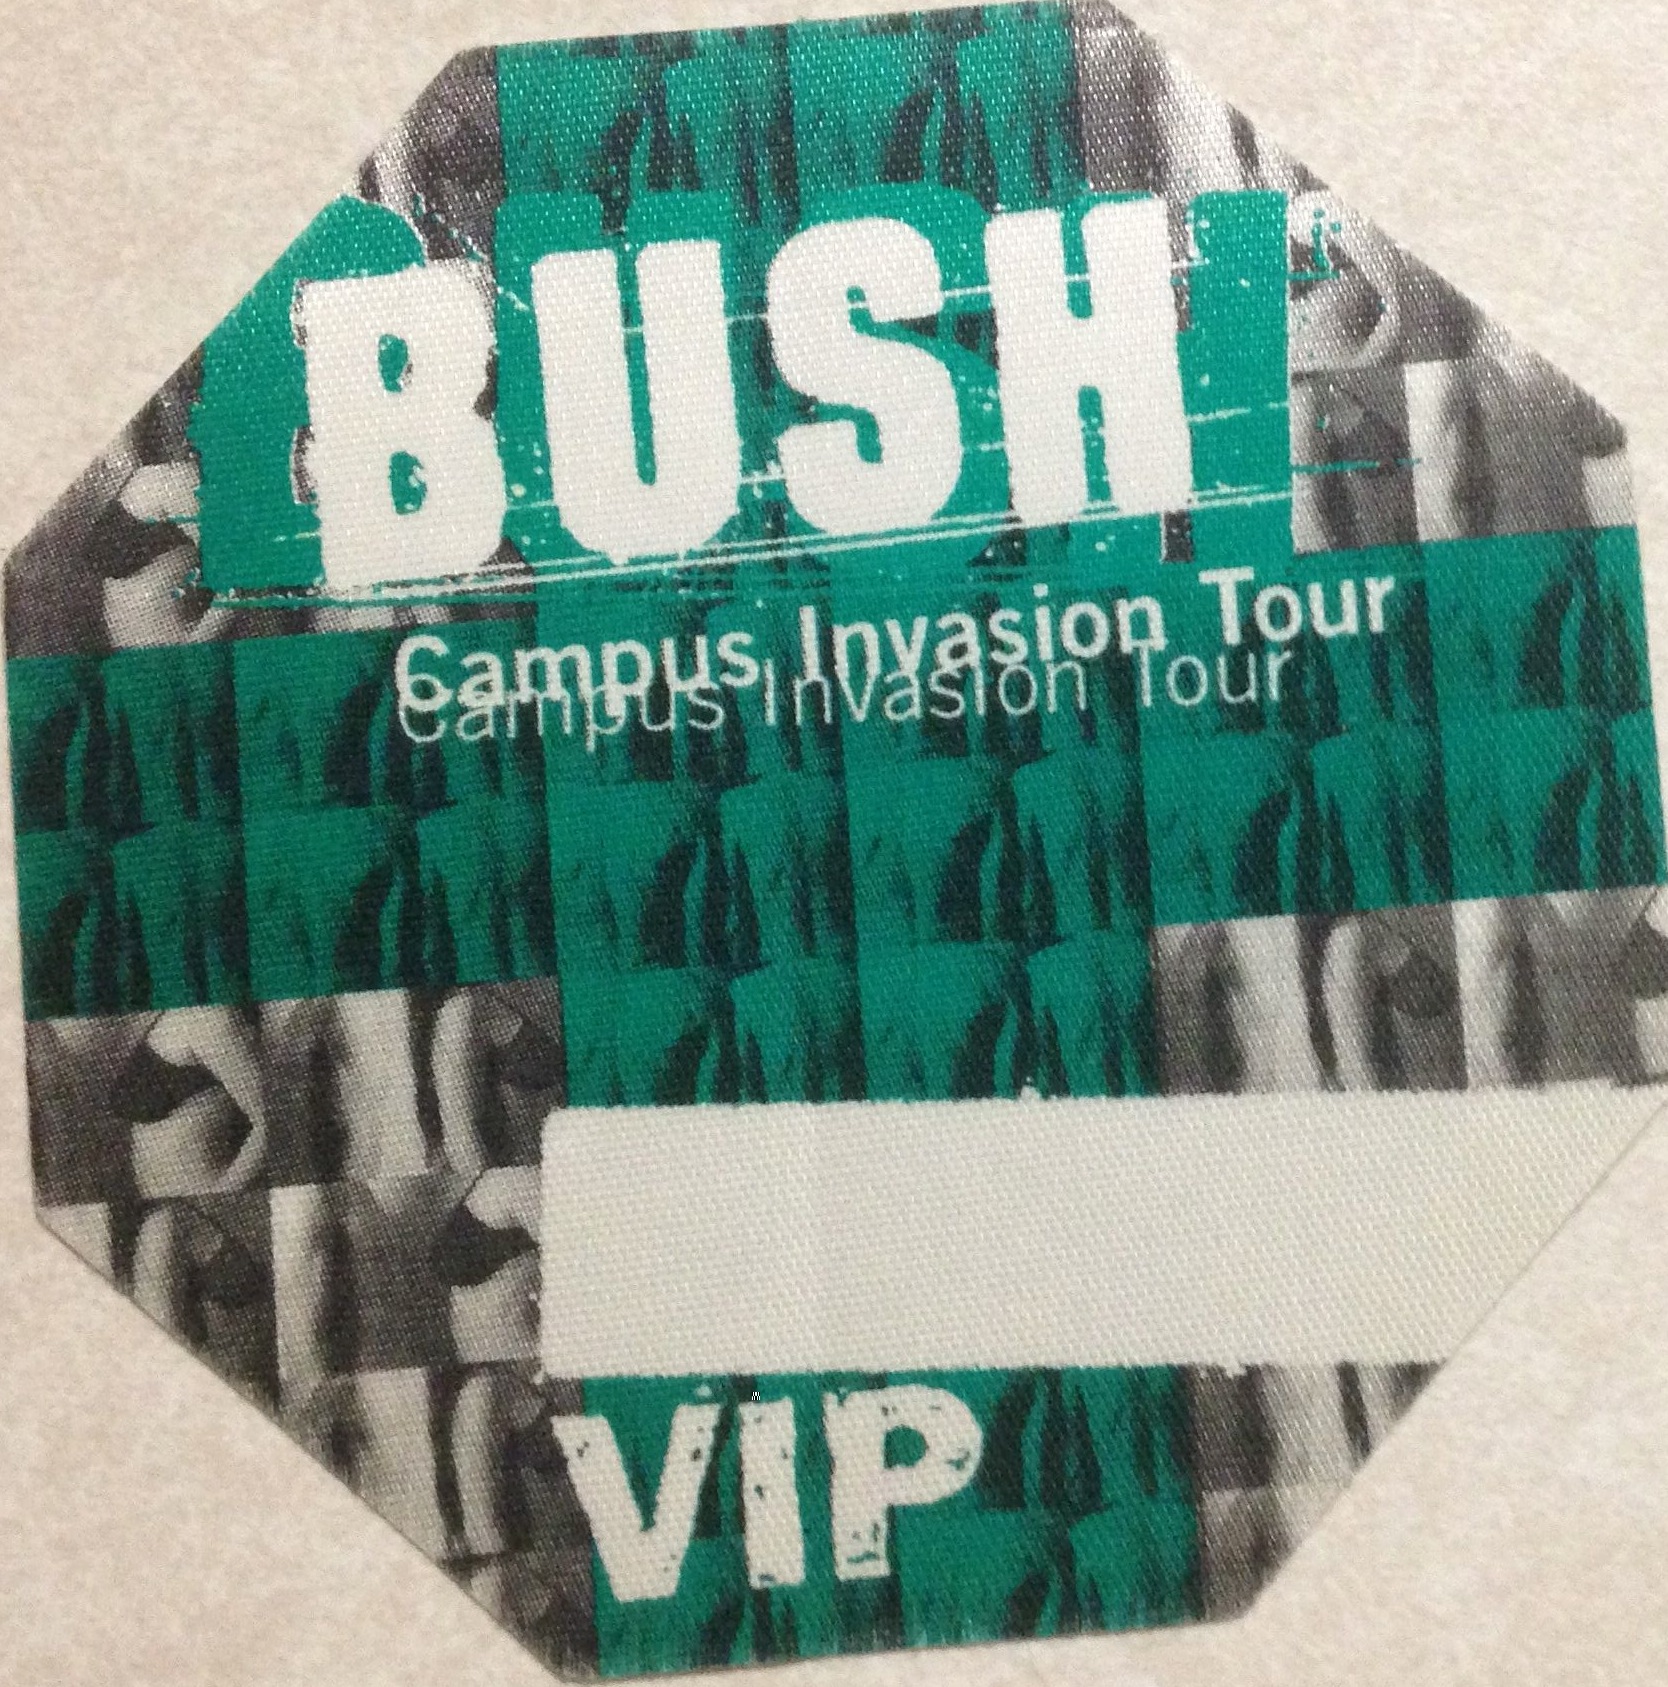 Campus Invasion Tour VIP